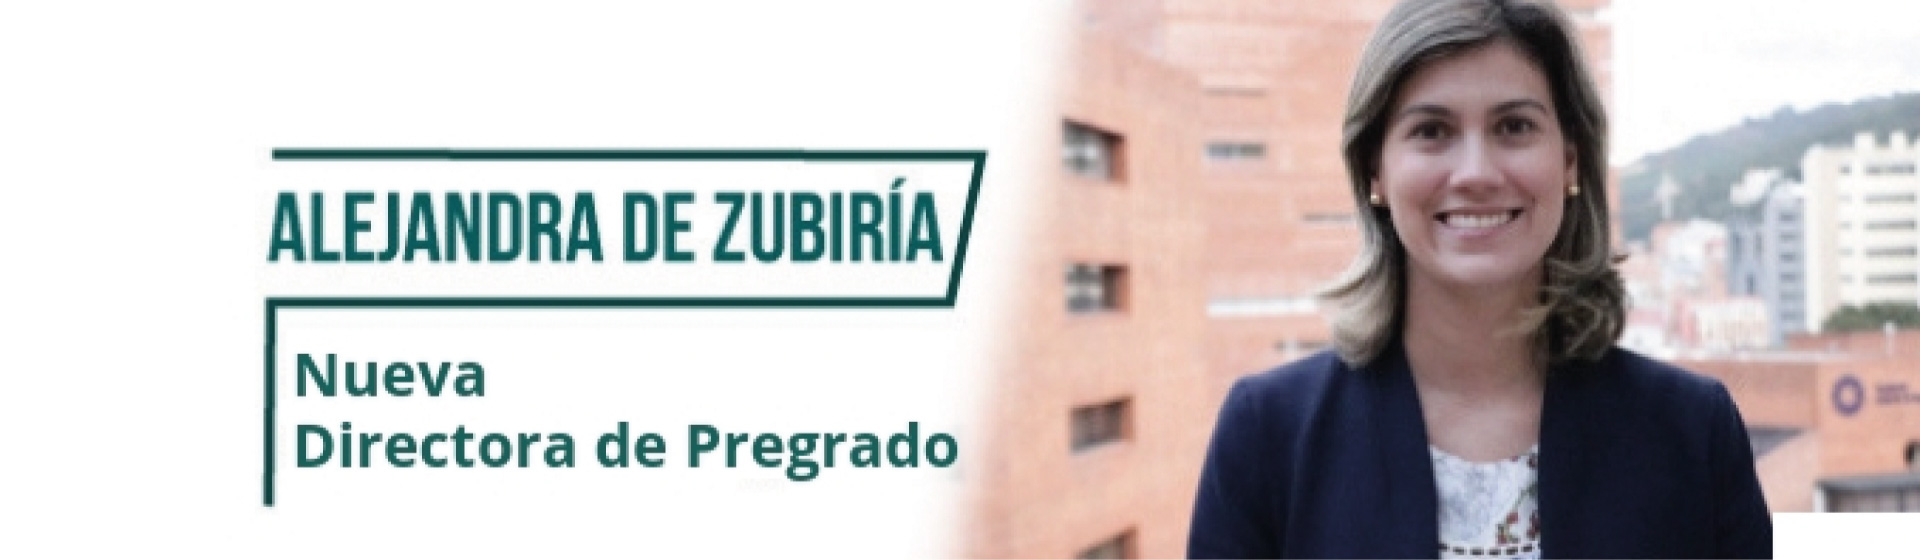 Directora de pregrado, Alejandra de Zubiria